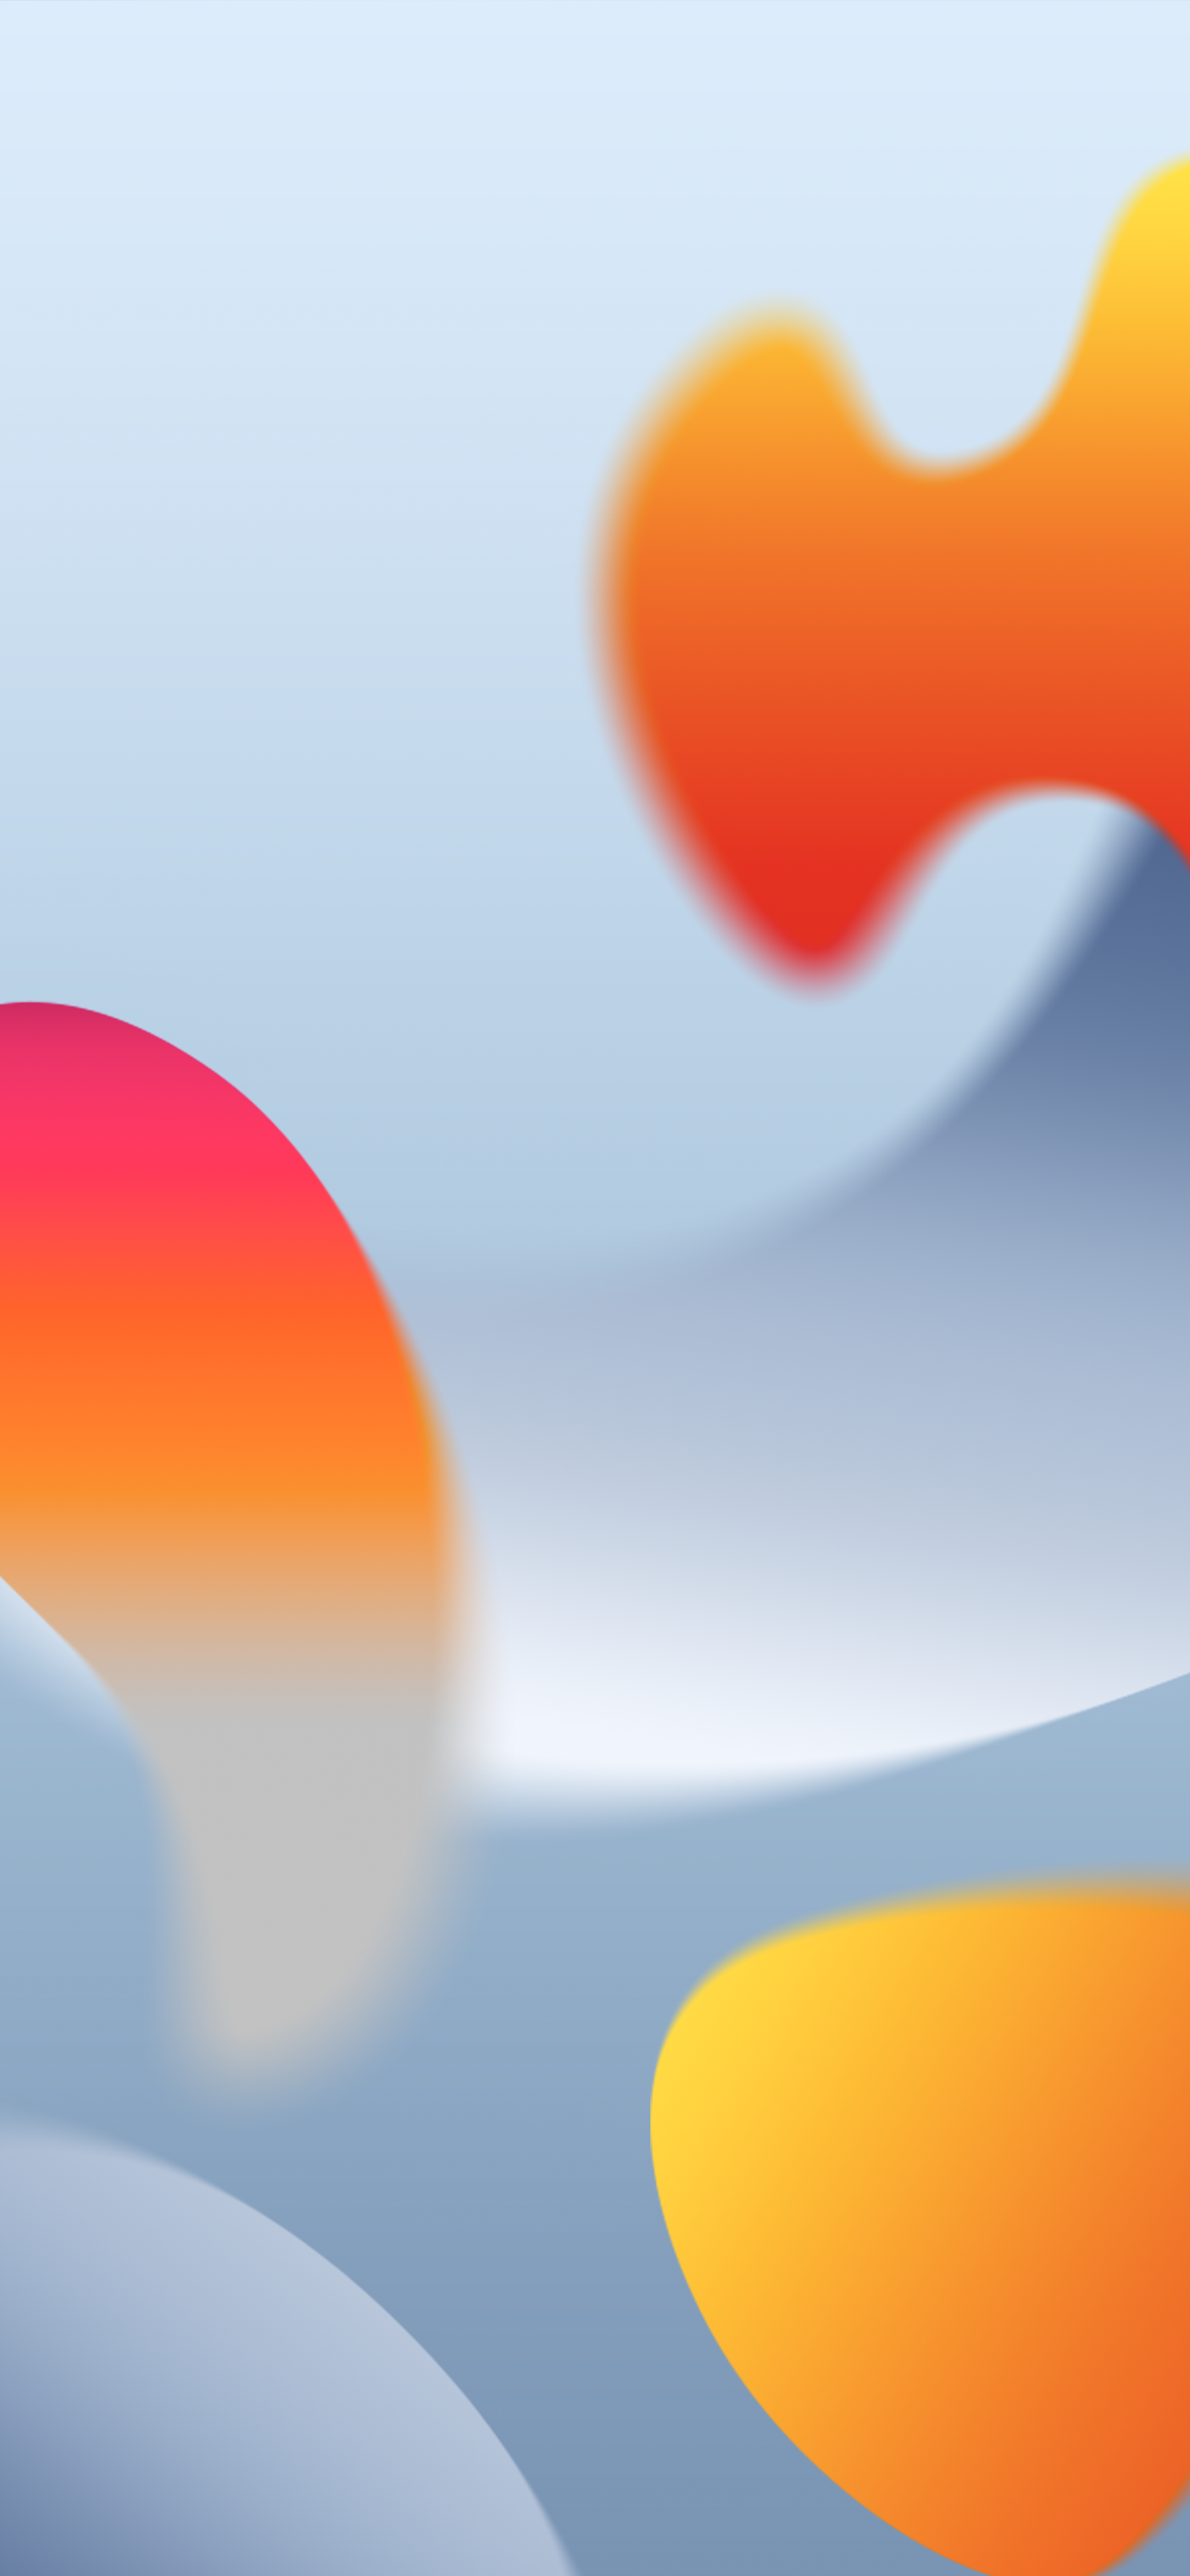 Hãy làm mới màn hình iPhone của bạn với gam màu cam và xám thanh lịch với bộ sưu tập hình nền iOS 16 này. Thiết kế đơn giản nhưng phong cách sẽ tạo ra một sự đồng nhất và hài hòa trên màn hình của bạn, giúp thêm phong cách và chứng tỏ sự sáng tạo của bạn.